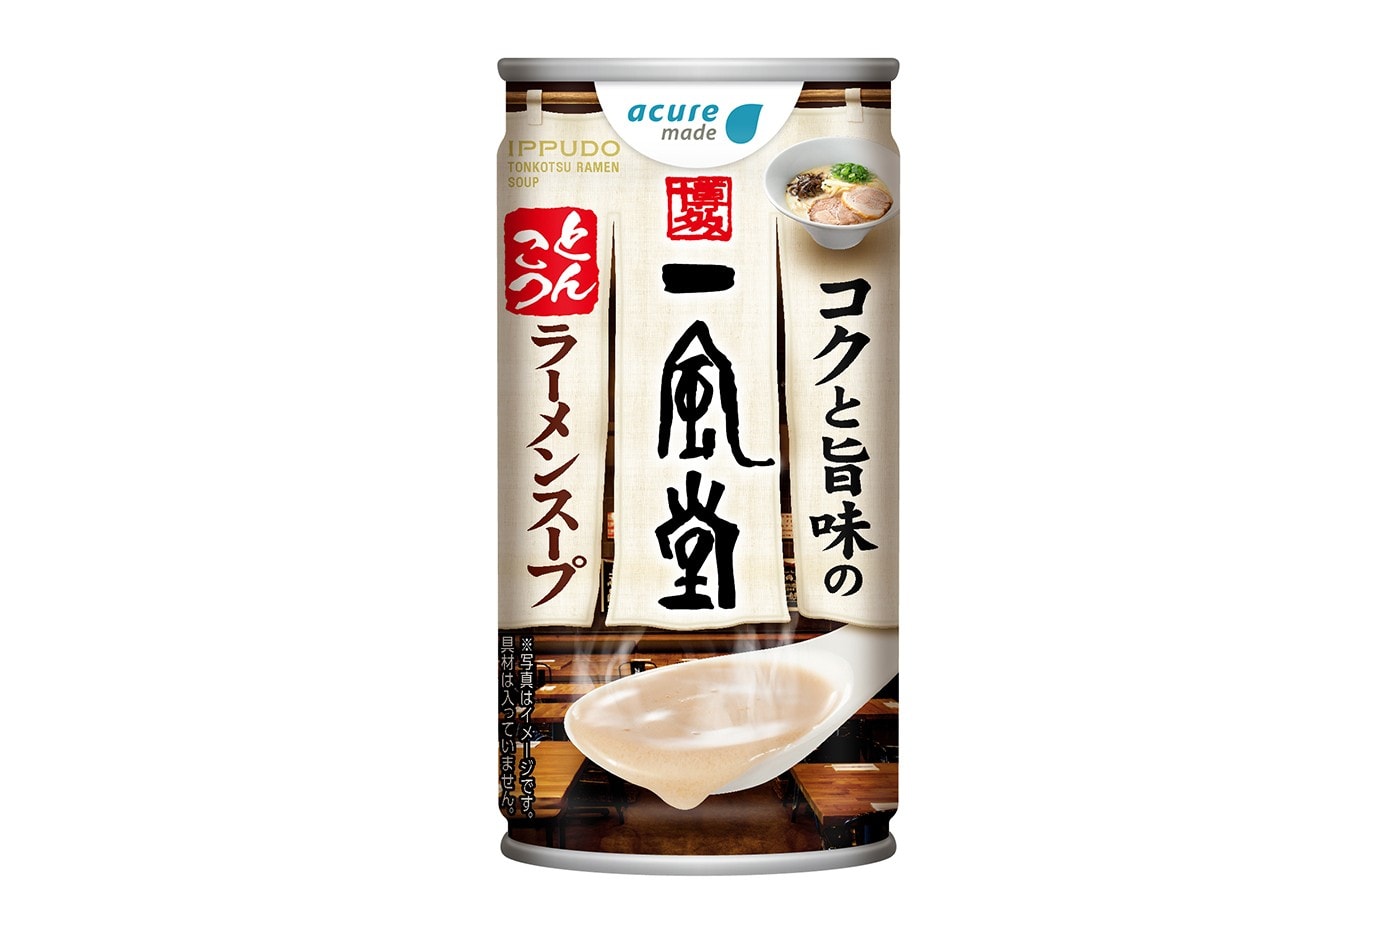 日本一風堂 Ippudo 推出全新「罐裝豚骨拉麵湯」飲料